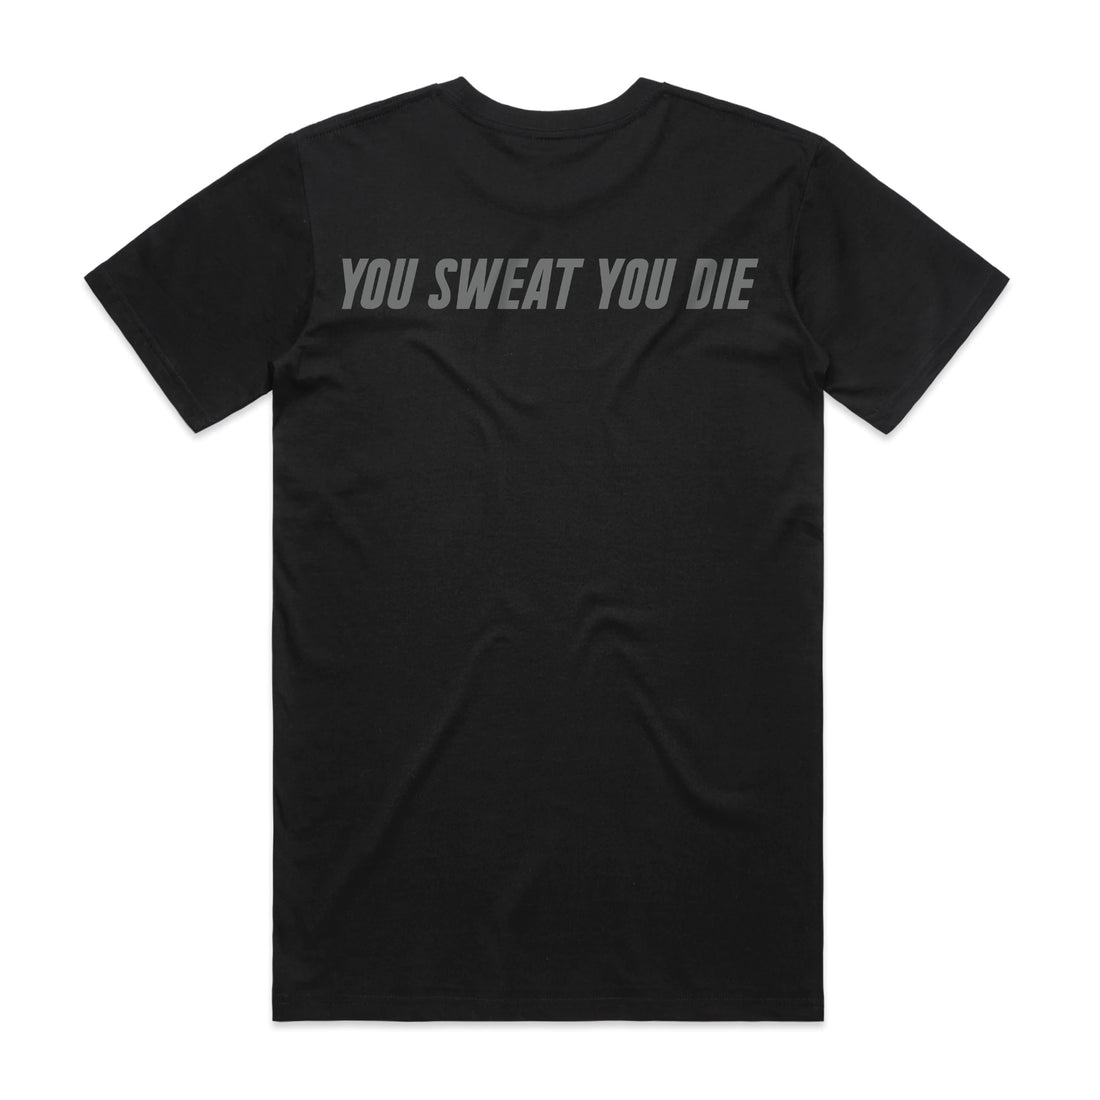 Survivorman - You Sweat You Die - Black Tee